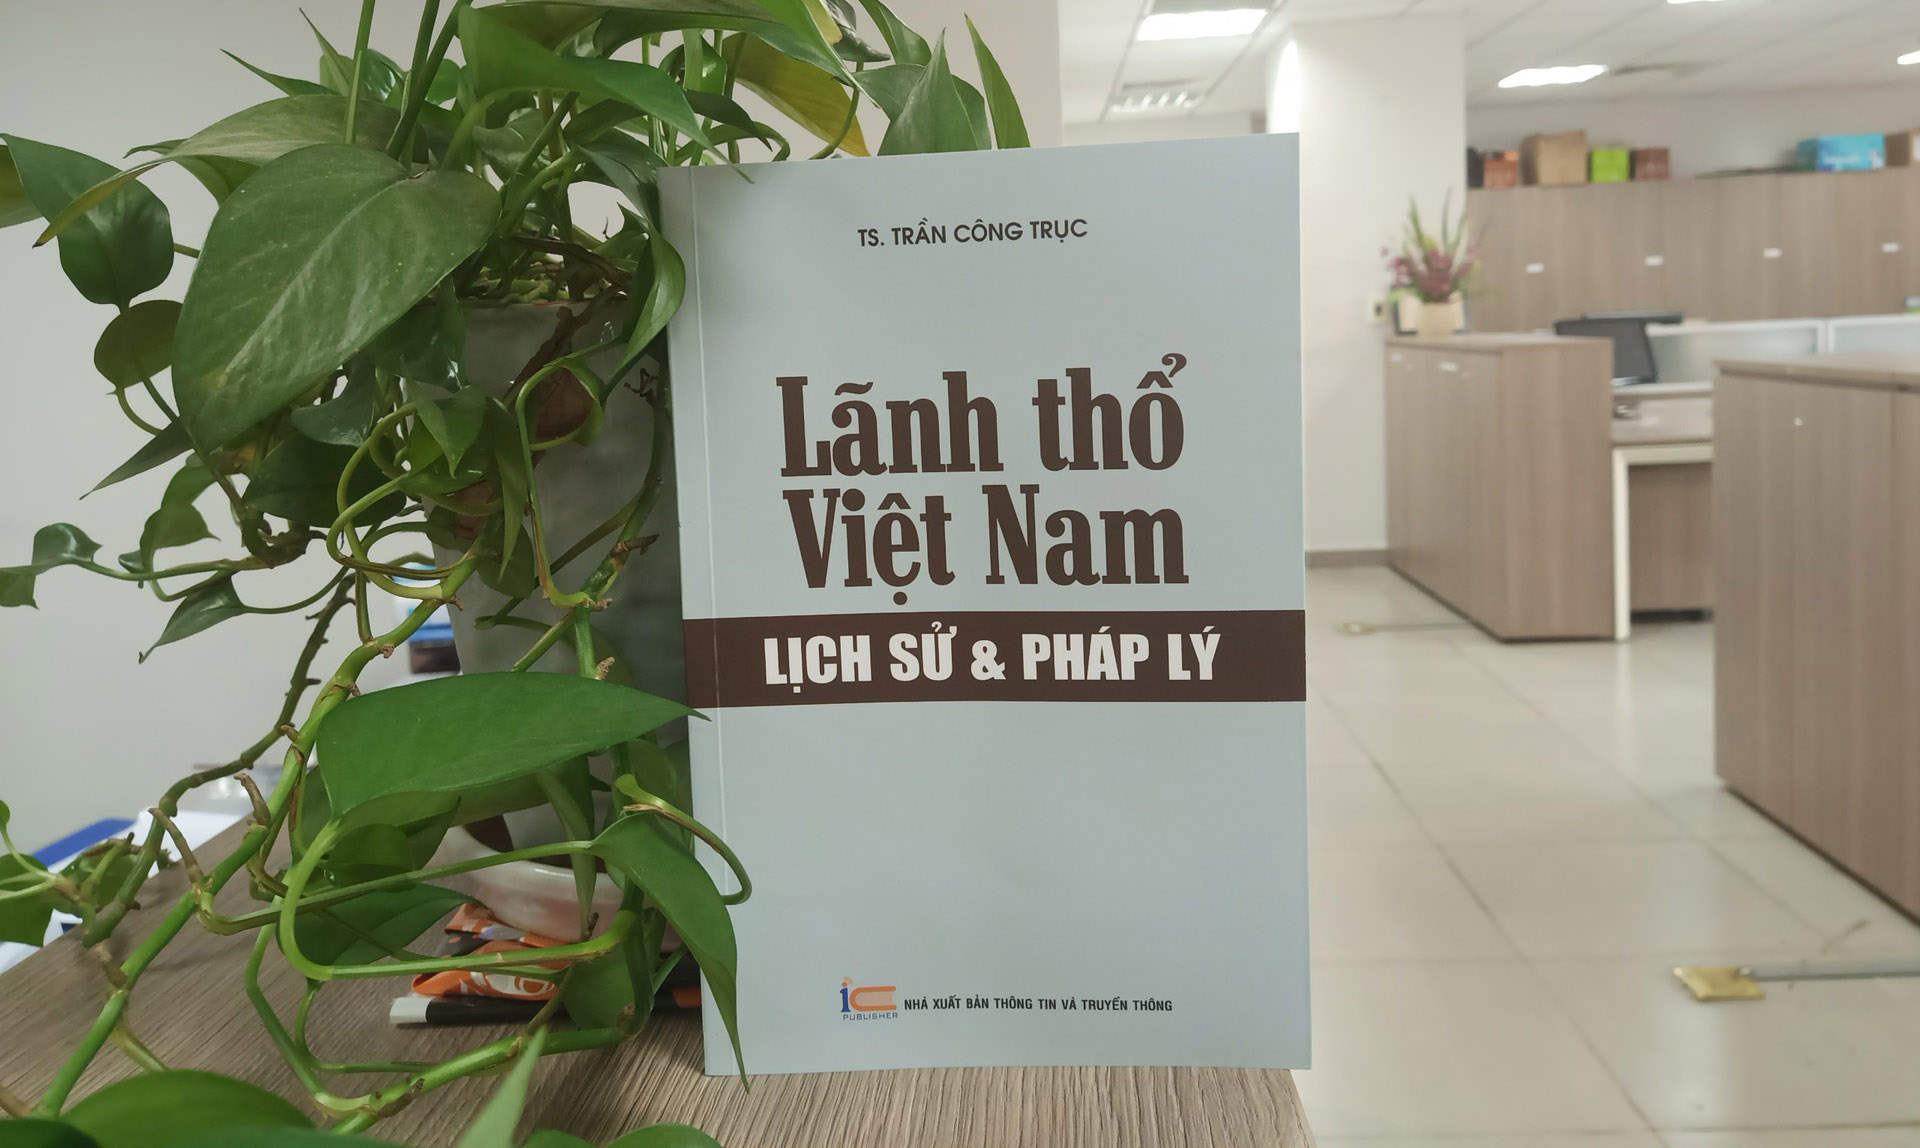 Bằng chứng lịch sử và pháp lý về chủ quyền lãnh thổ Việt Nam